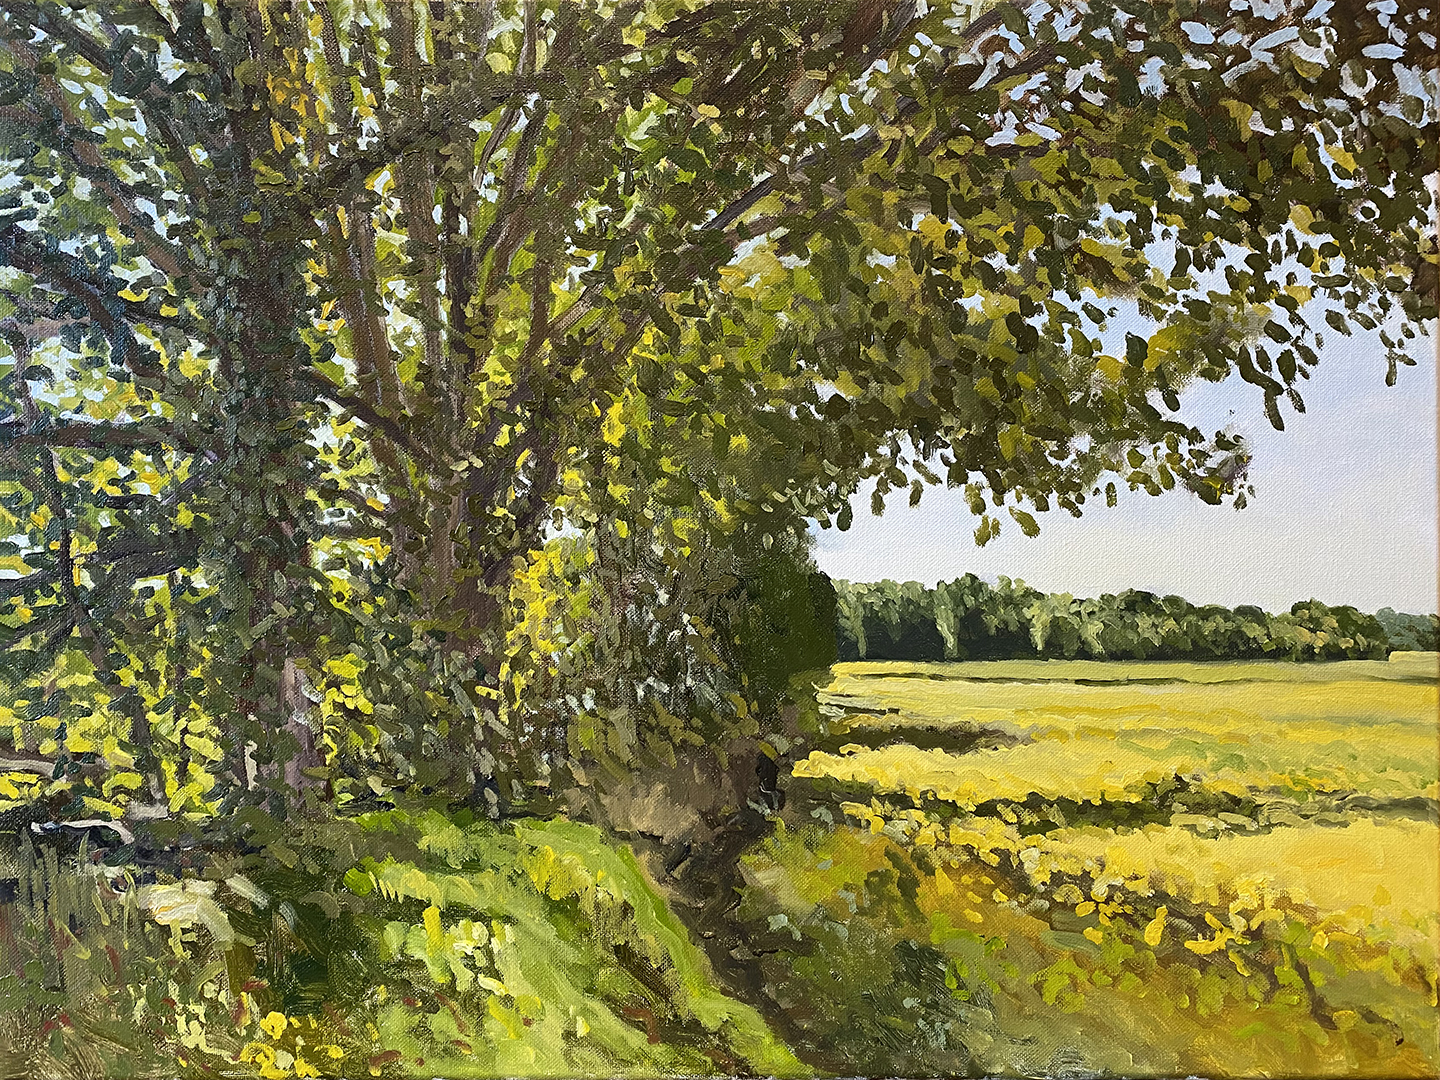 Three Oaks, MI plein air, oil on canvas, 18 x 24 inches